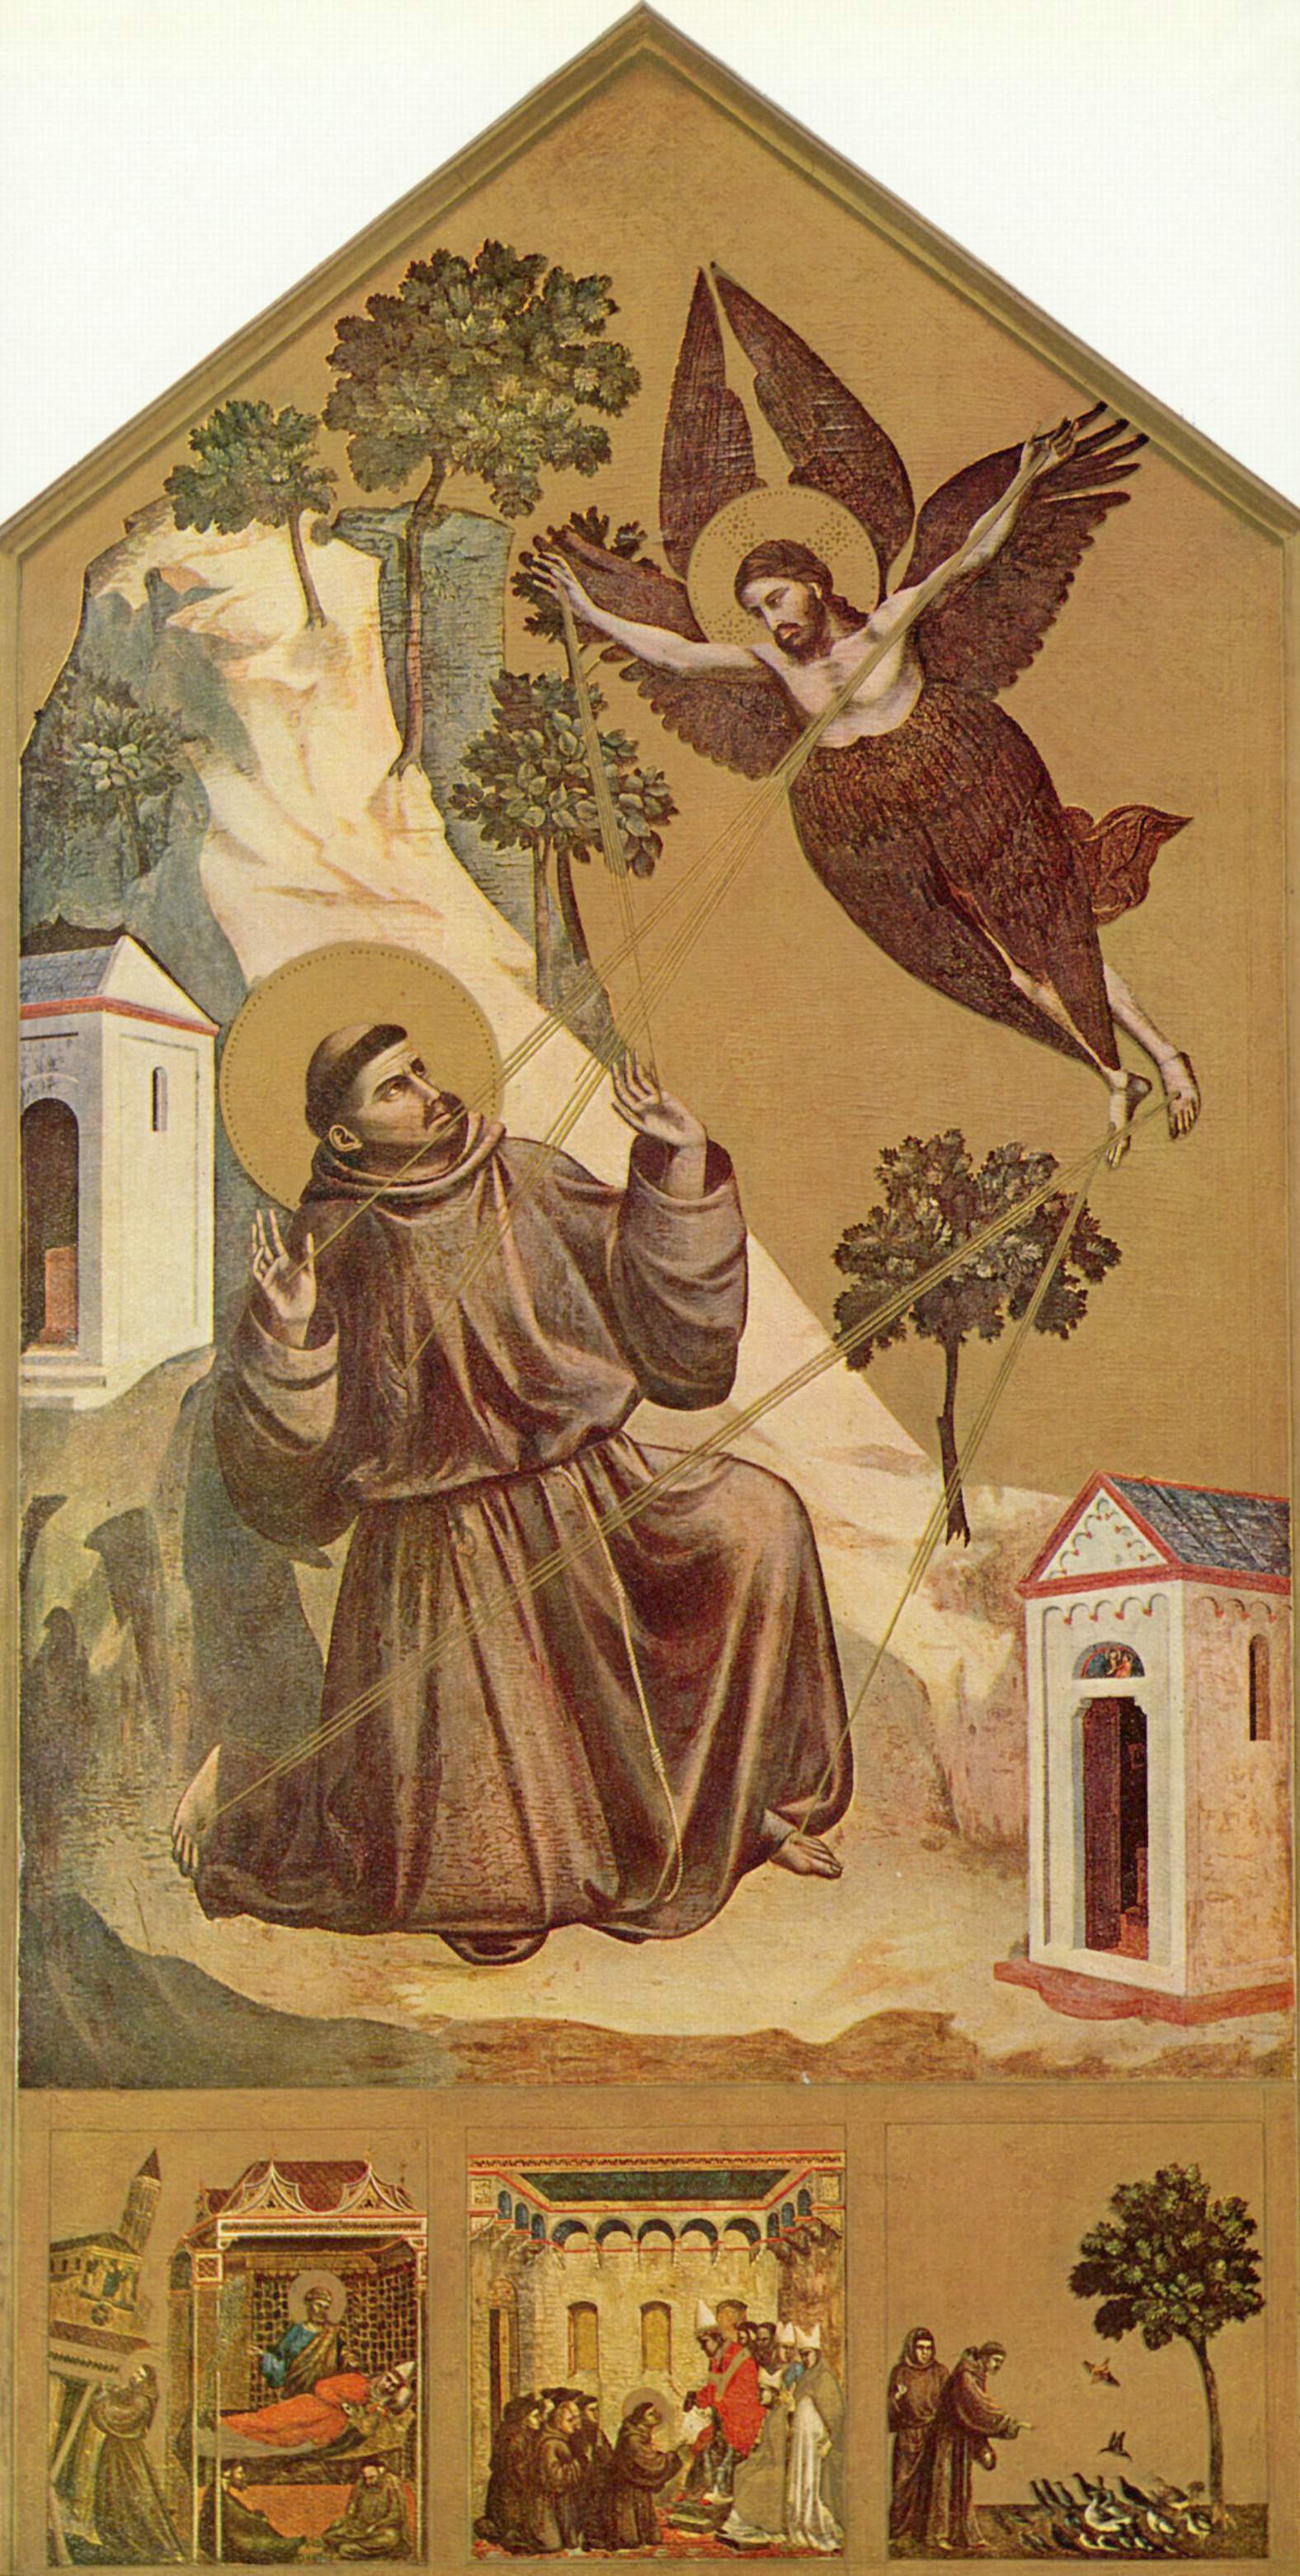 File:Giotto di Bondone 002.jpg - Wikipedia, the free encyclopedia